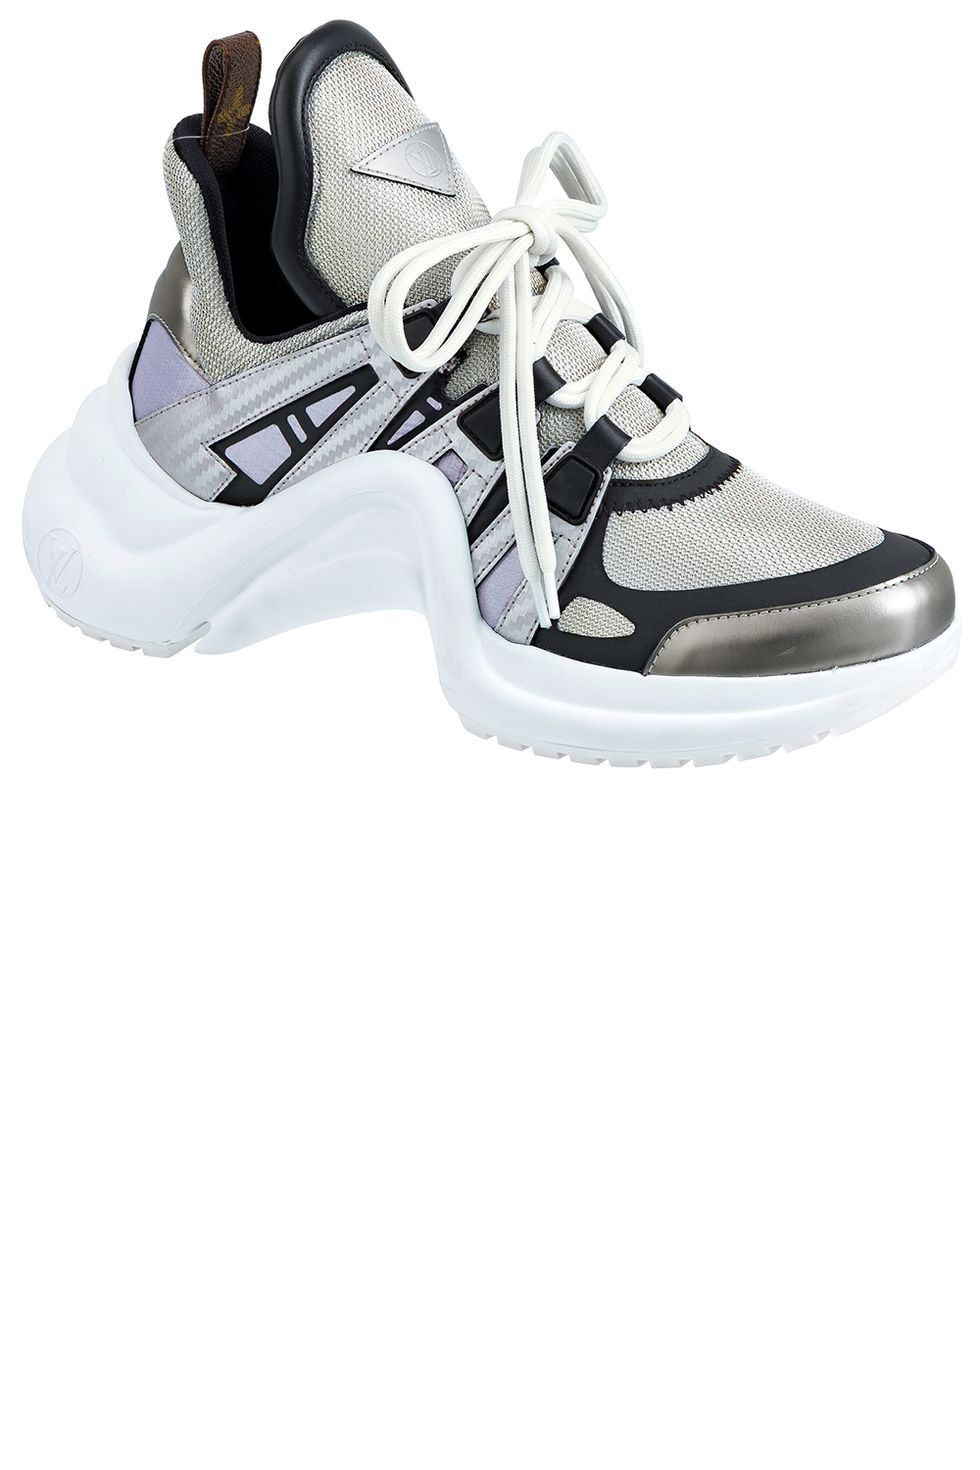 Shoe, Footwear, White, Sneakers, Running shoe, Outdoor shoe, Walking shoe, Tennis shoe, Athletic shoe, Nike free, 